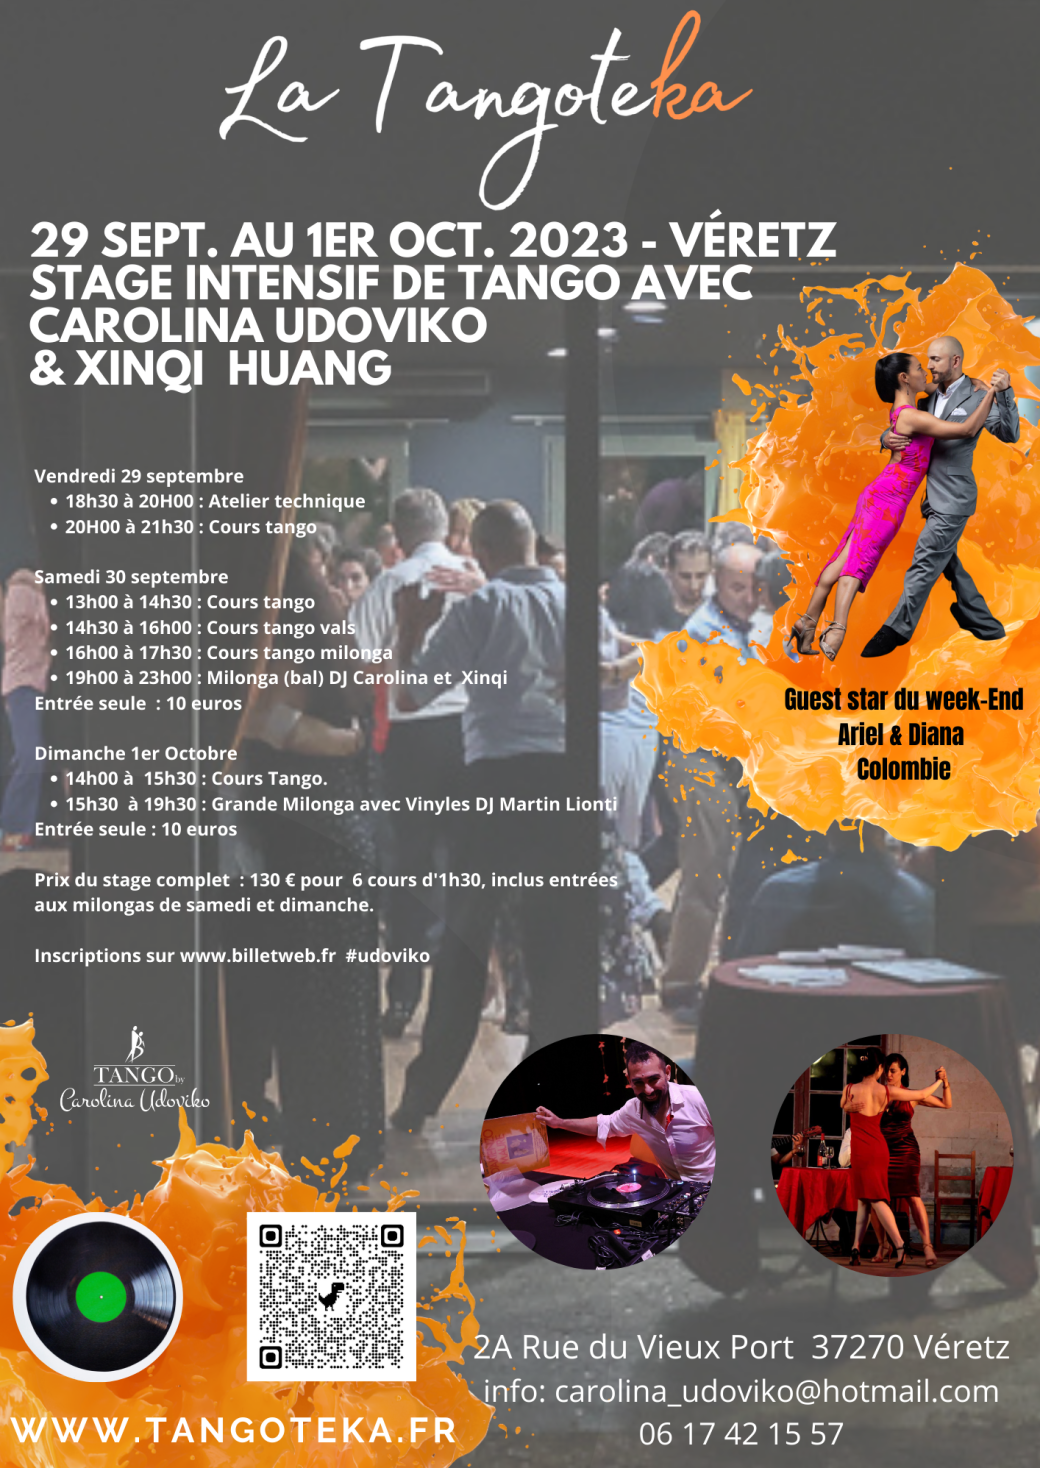 Weekend Tango Argentin | La Tangoteka - Véretz | 29 sept au 1er Oct